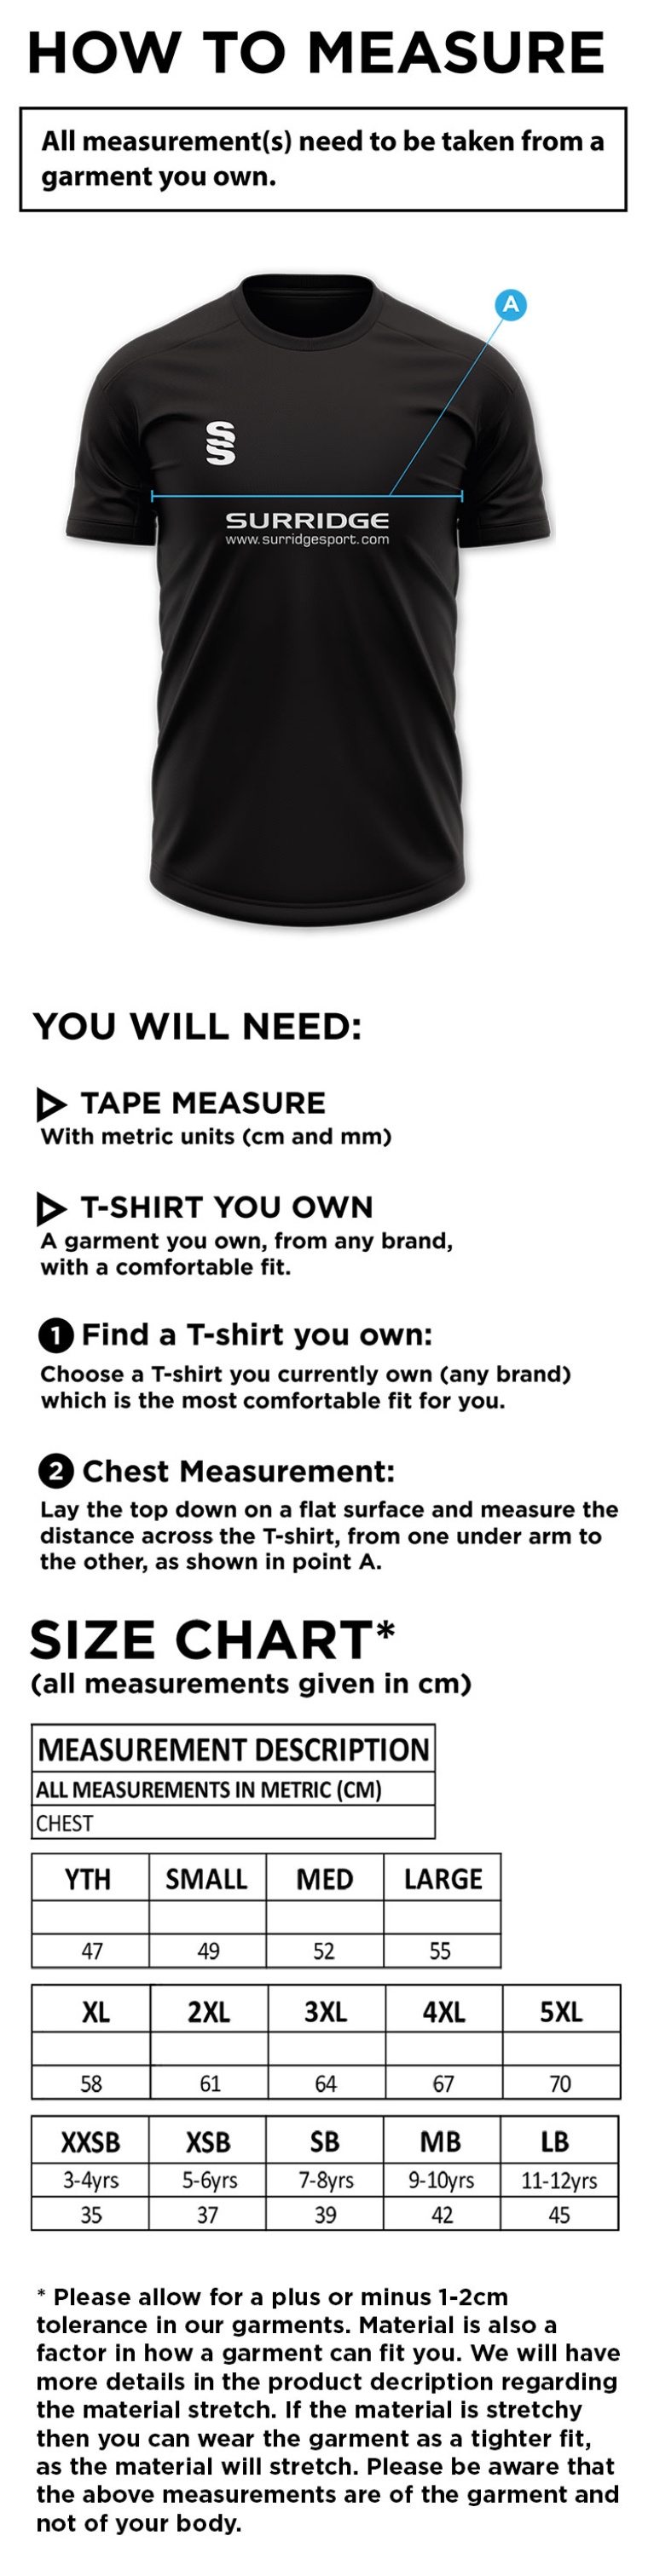 Nailsea CC - Blade Polo Shirt - Size Guide